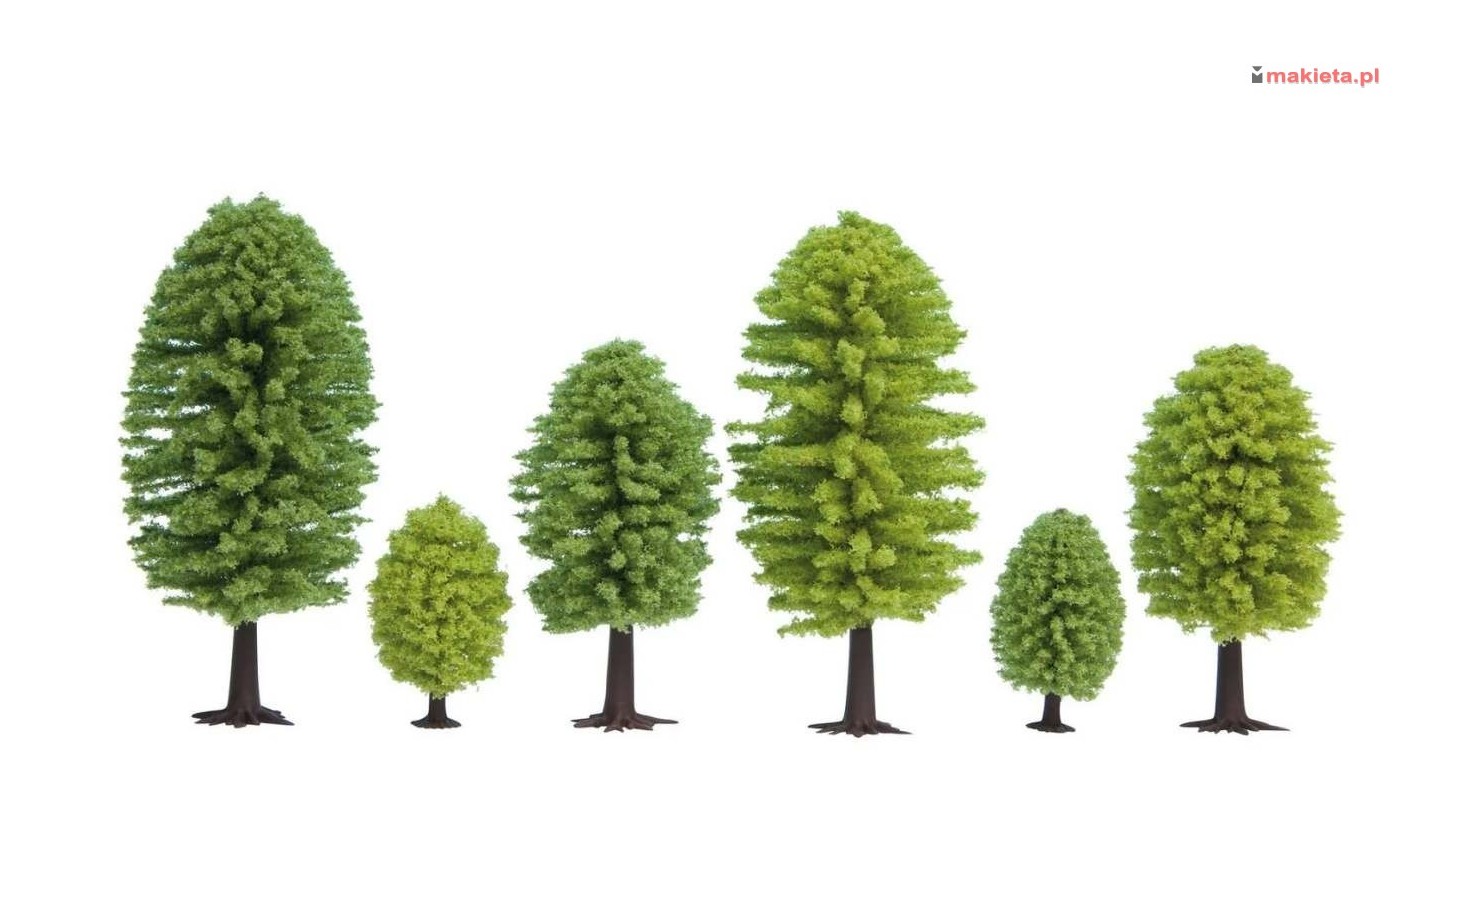 NOCH 32901. Zestaw drzew, 10 szt. 3,5 - 5 cm, skala N